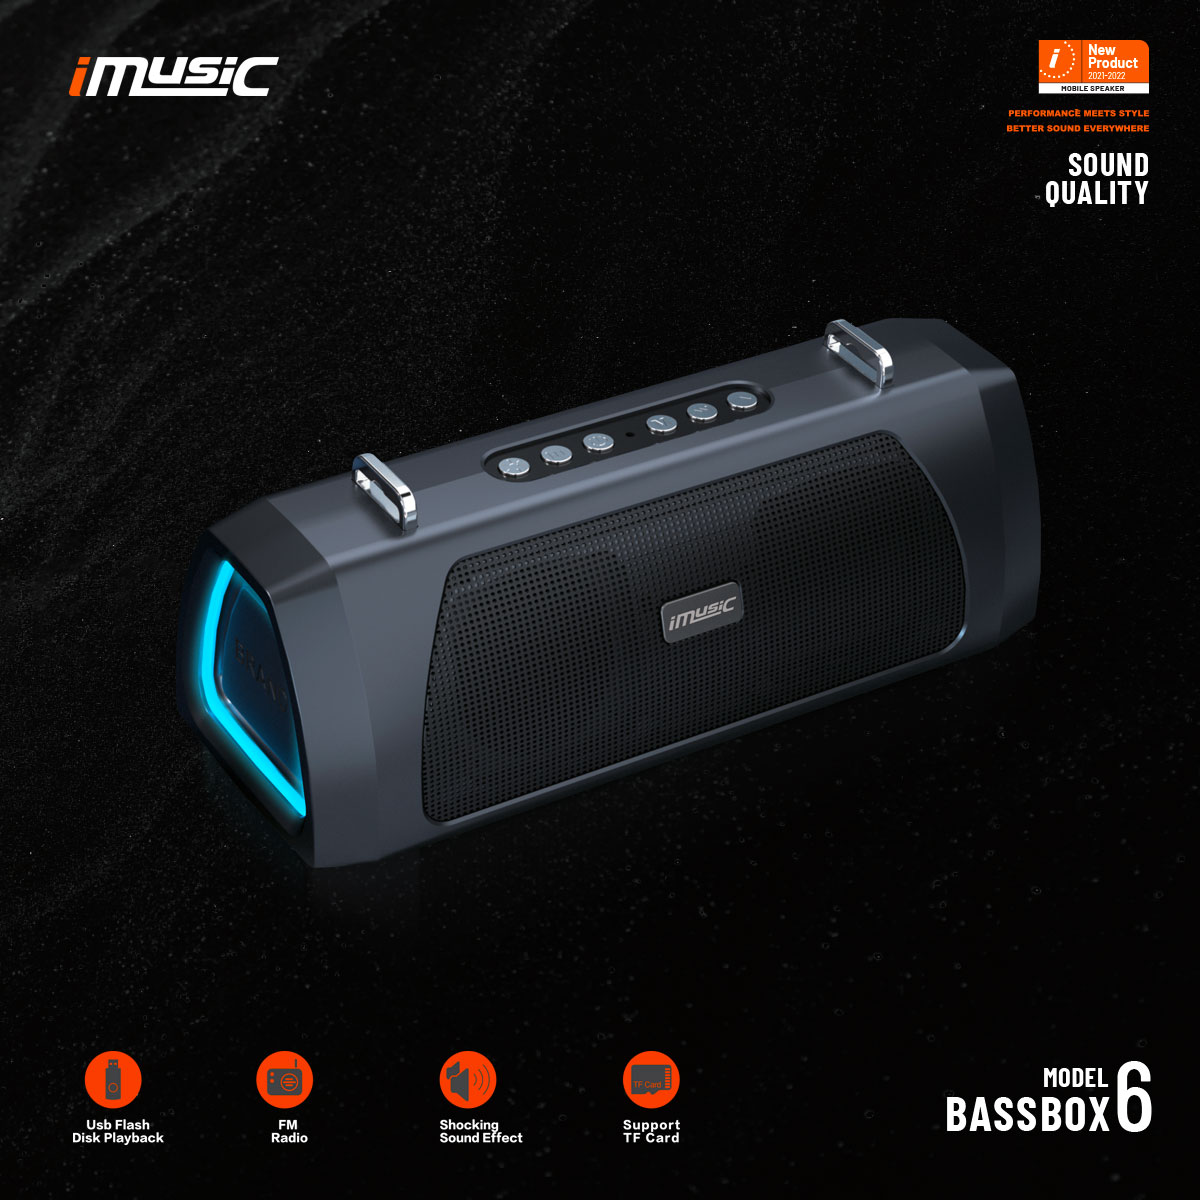 Loa Bluetooth BassBOX 6 công suất 20W hiệu ứng LED sử dụng liên tục trên 8 tiếng - Hàng chính hãng iMusic Vietnam